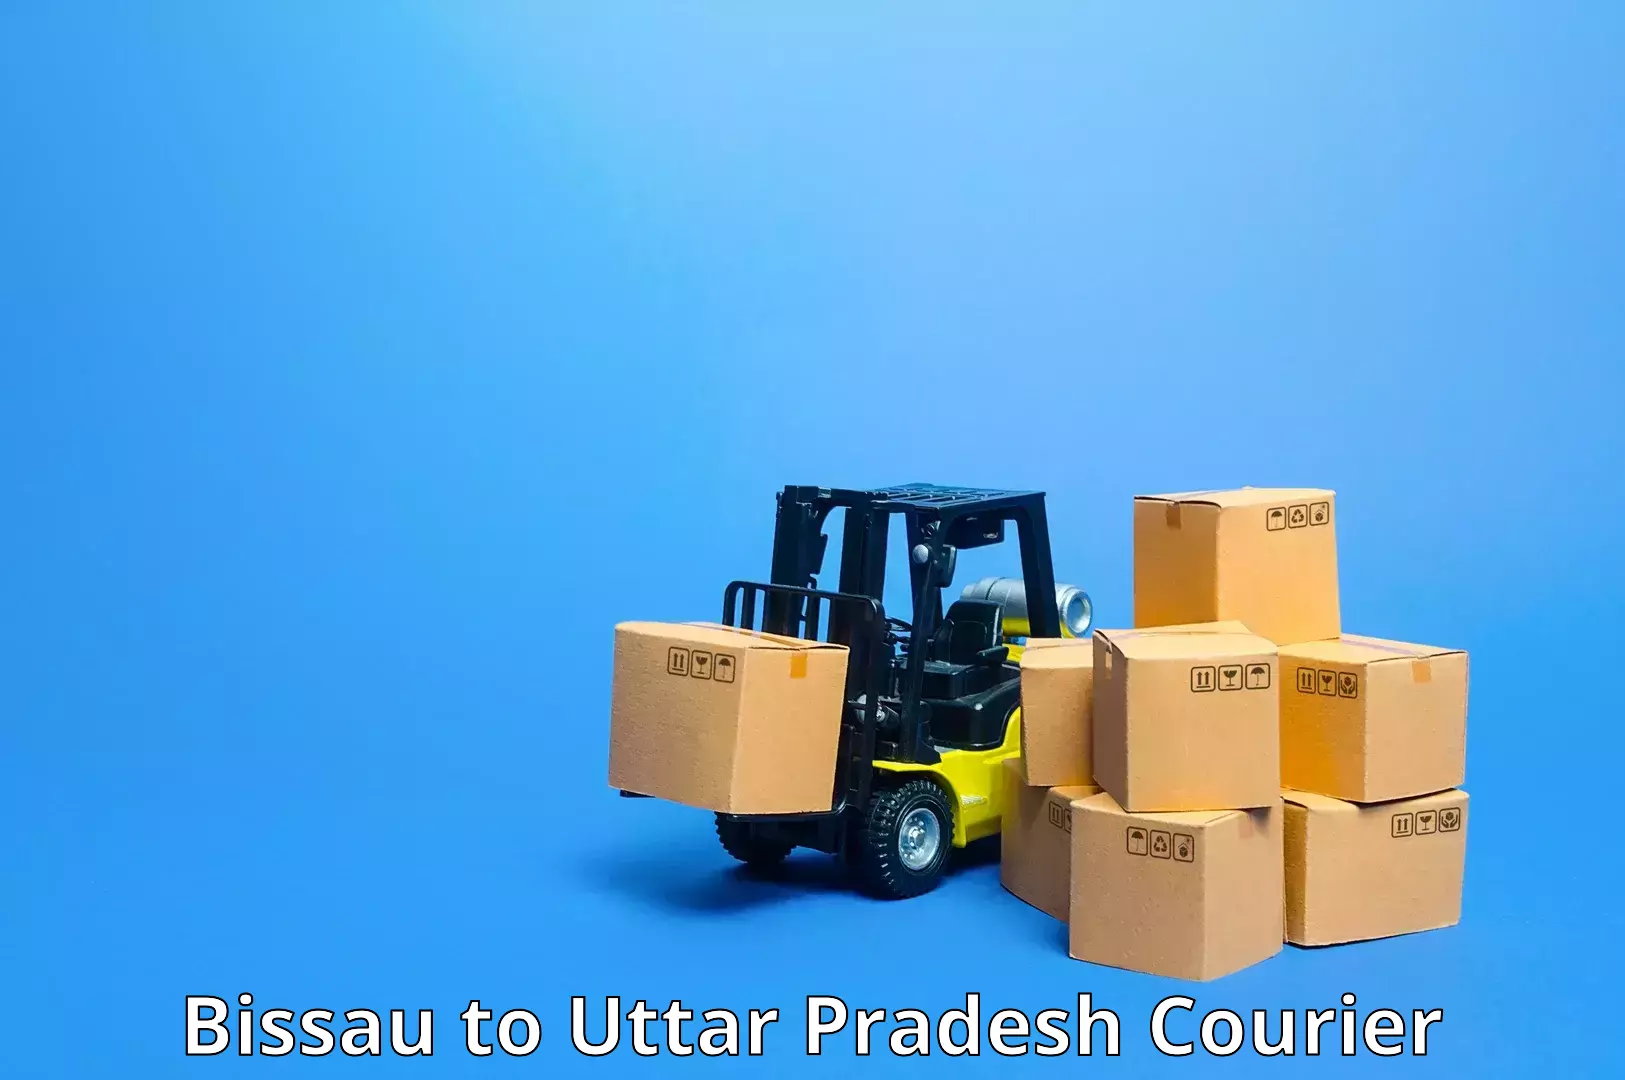 Sustainable courier practices Bissau to Uttar Pradesh